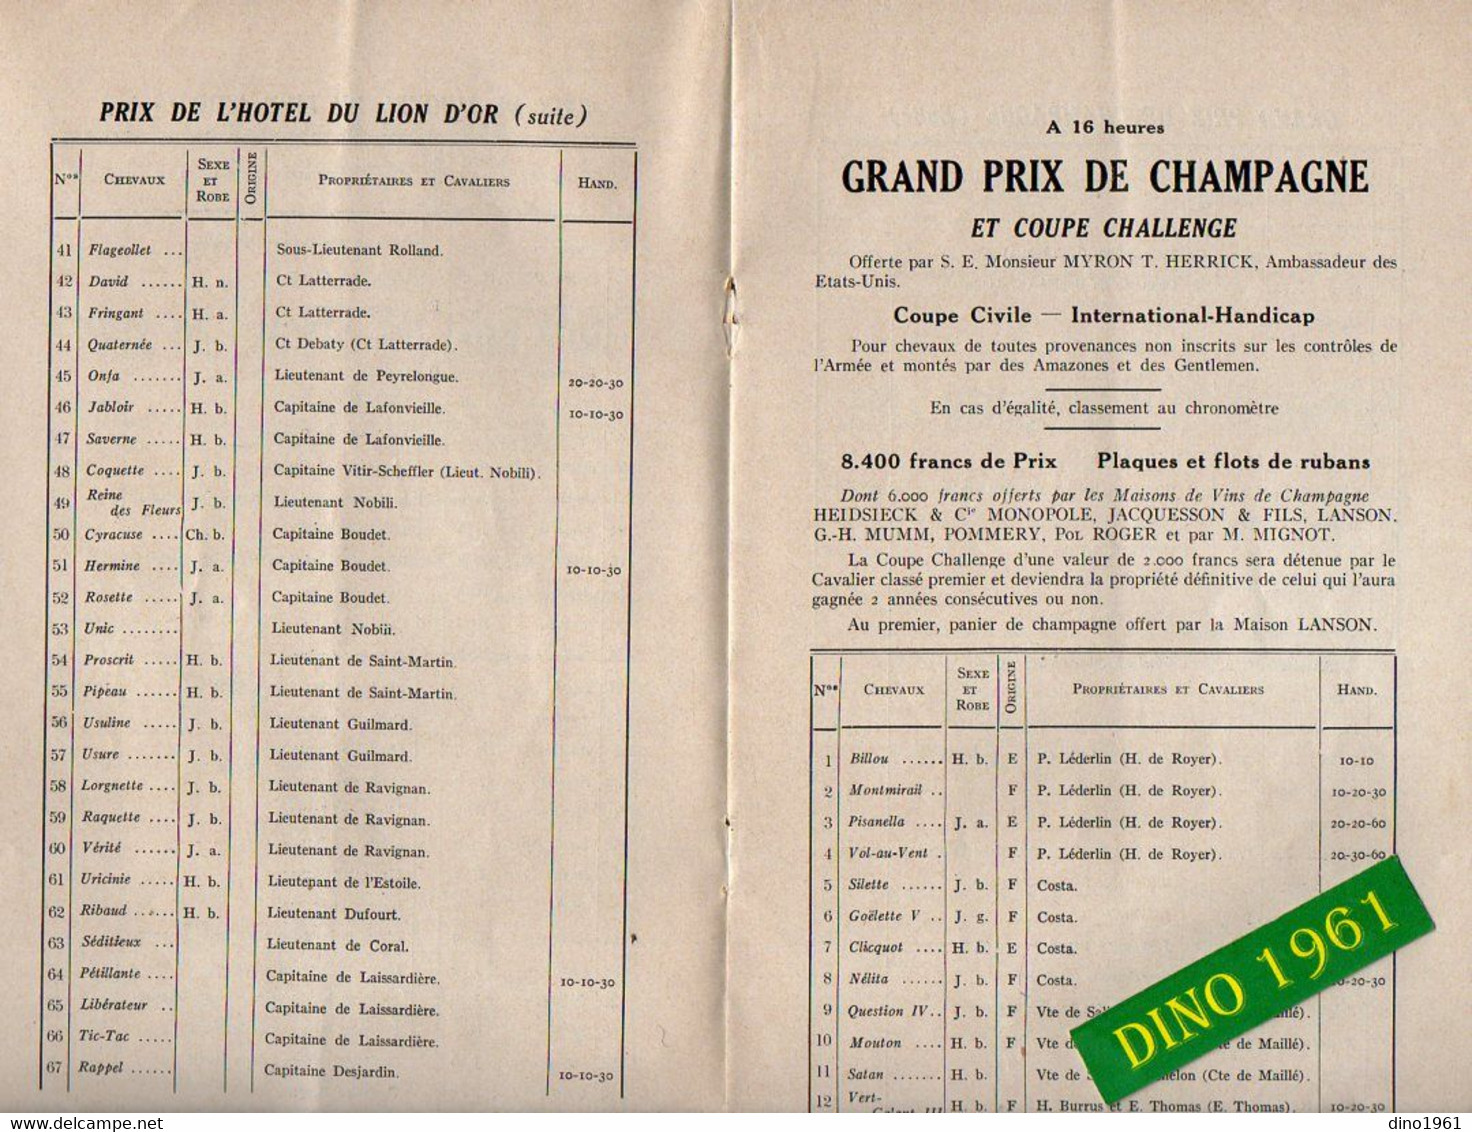 VP20.454 - 1929 - Rare - Programme Officiel - Concours Hippique De REIMS Au Parc POMMERY - Programs